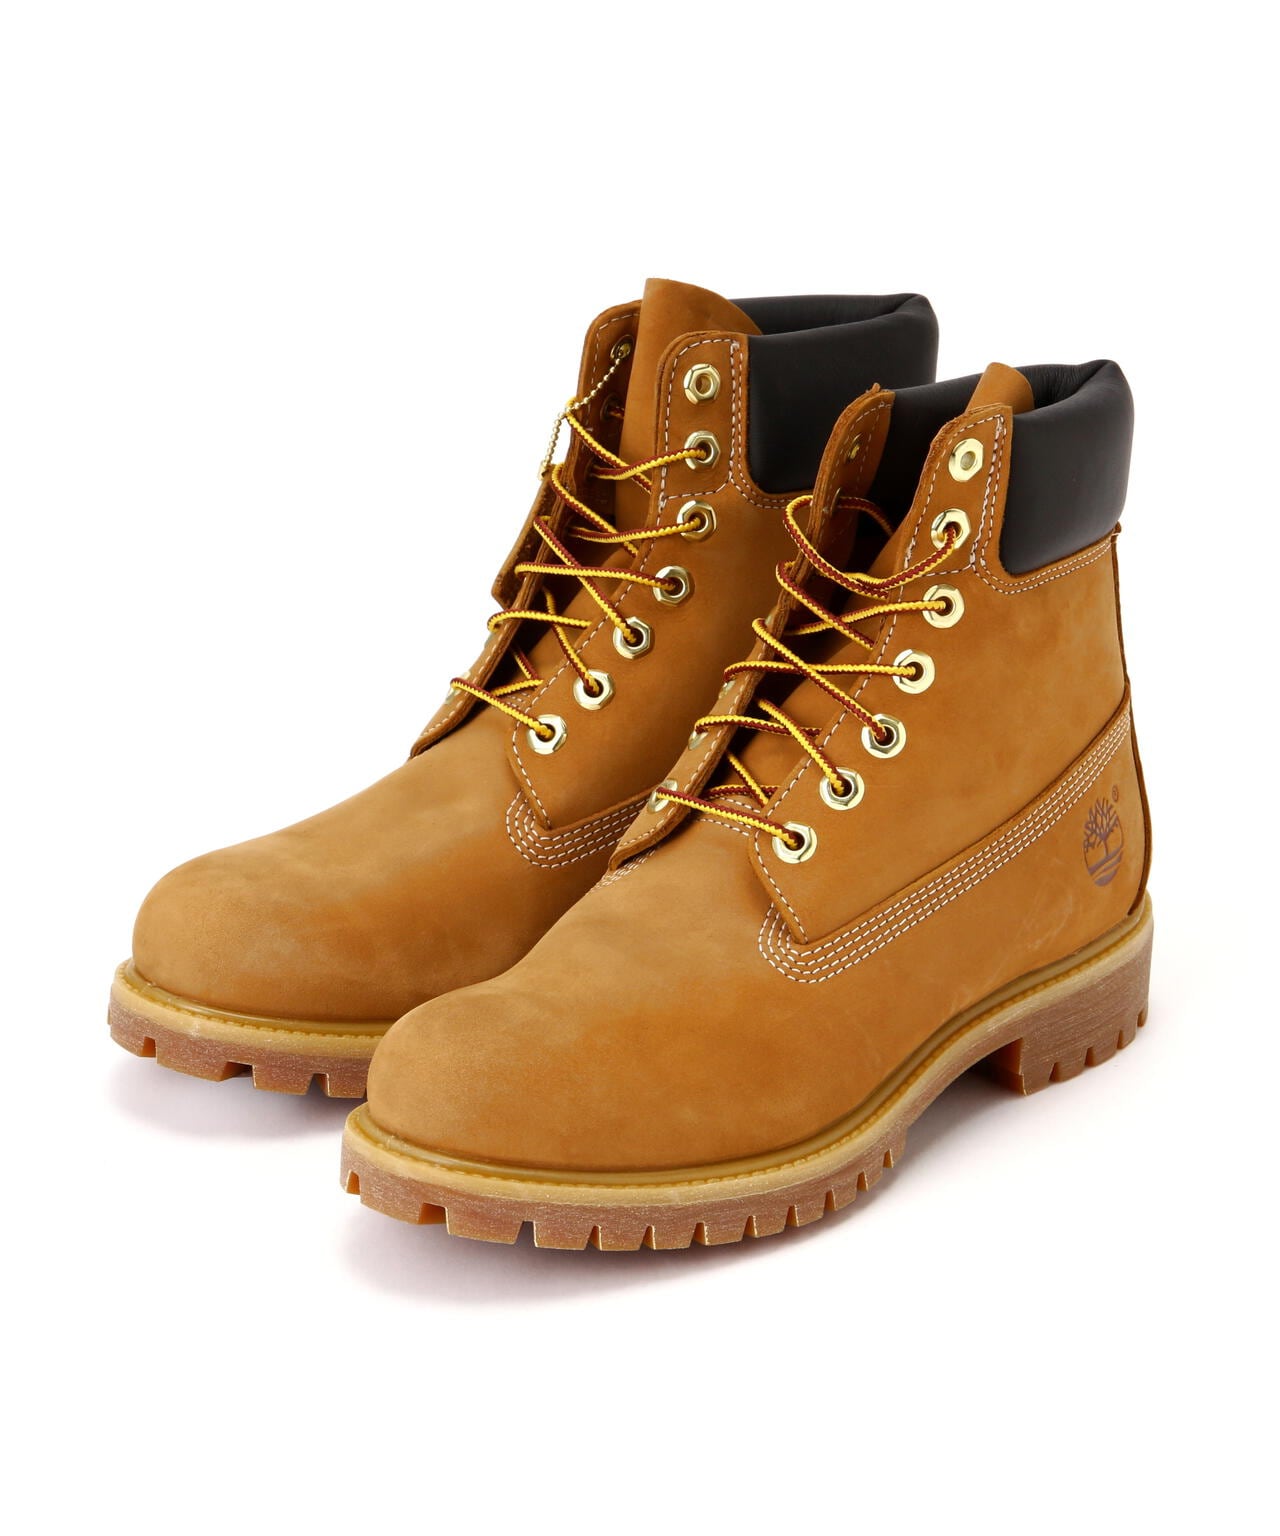 Timberland/ティンバーランド/6inch Premium Boots/6インチ プレミアム